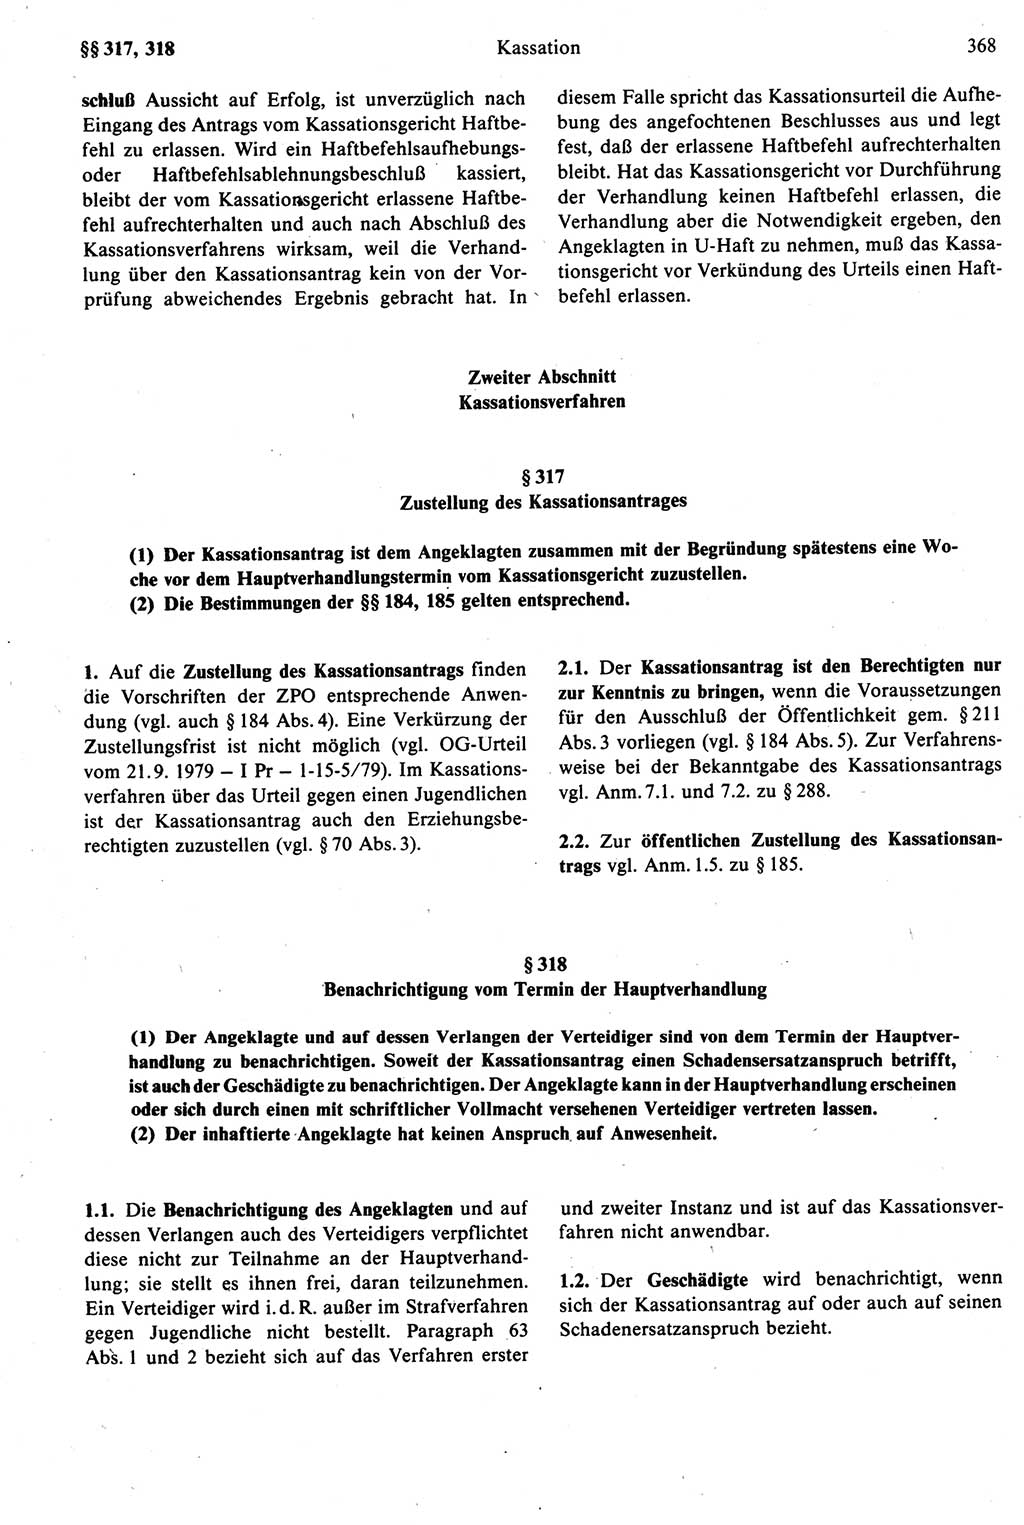 Strafprozeßrecht der DDR [Deutsche Demokratische Republik], Kommentar zur Strafprozeßordnung (StPO) 1987, Seite 368 (Strafprozeßr. DDR Komm. StPO 1987, S. 368)